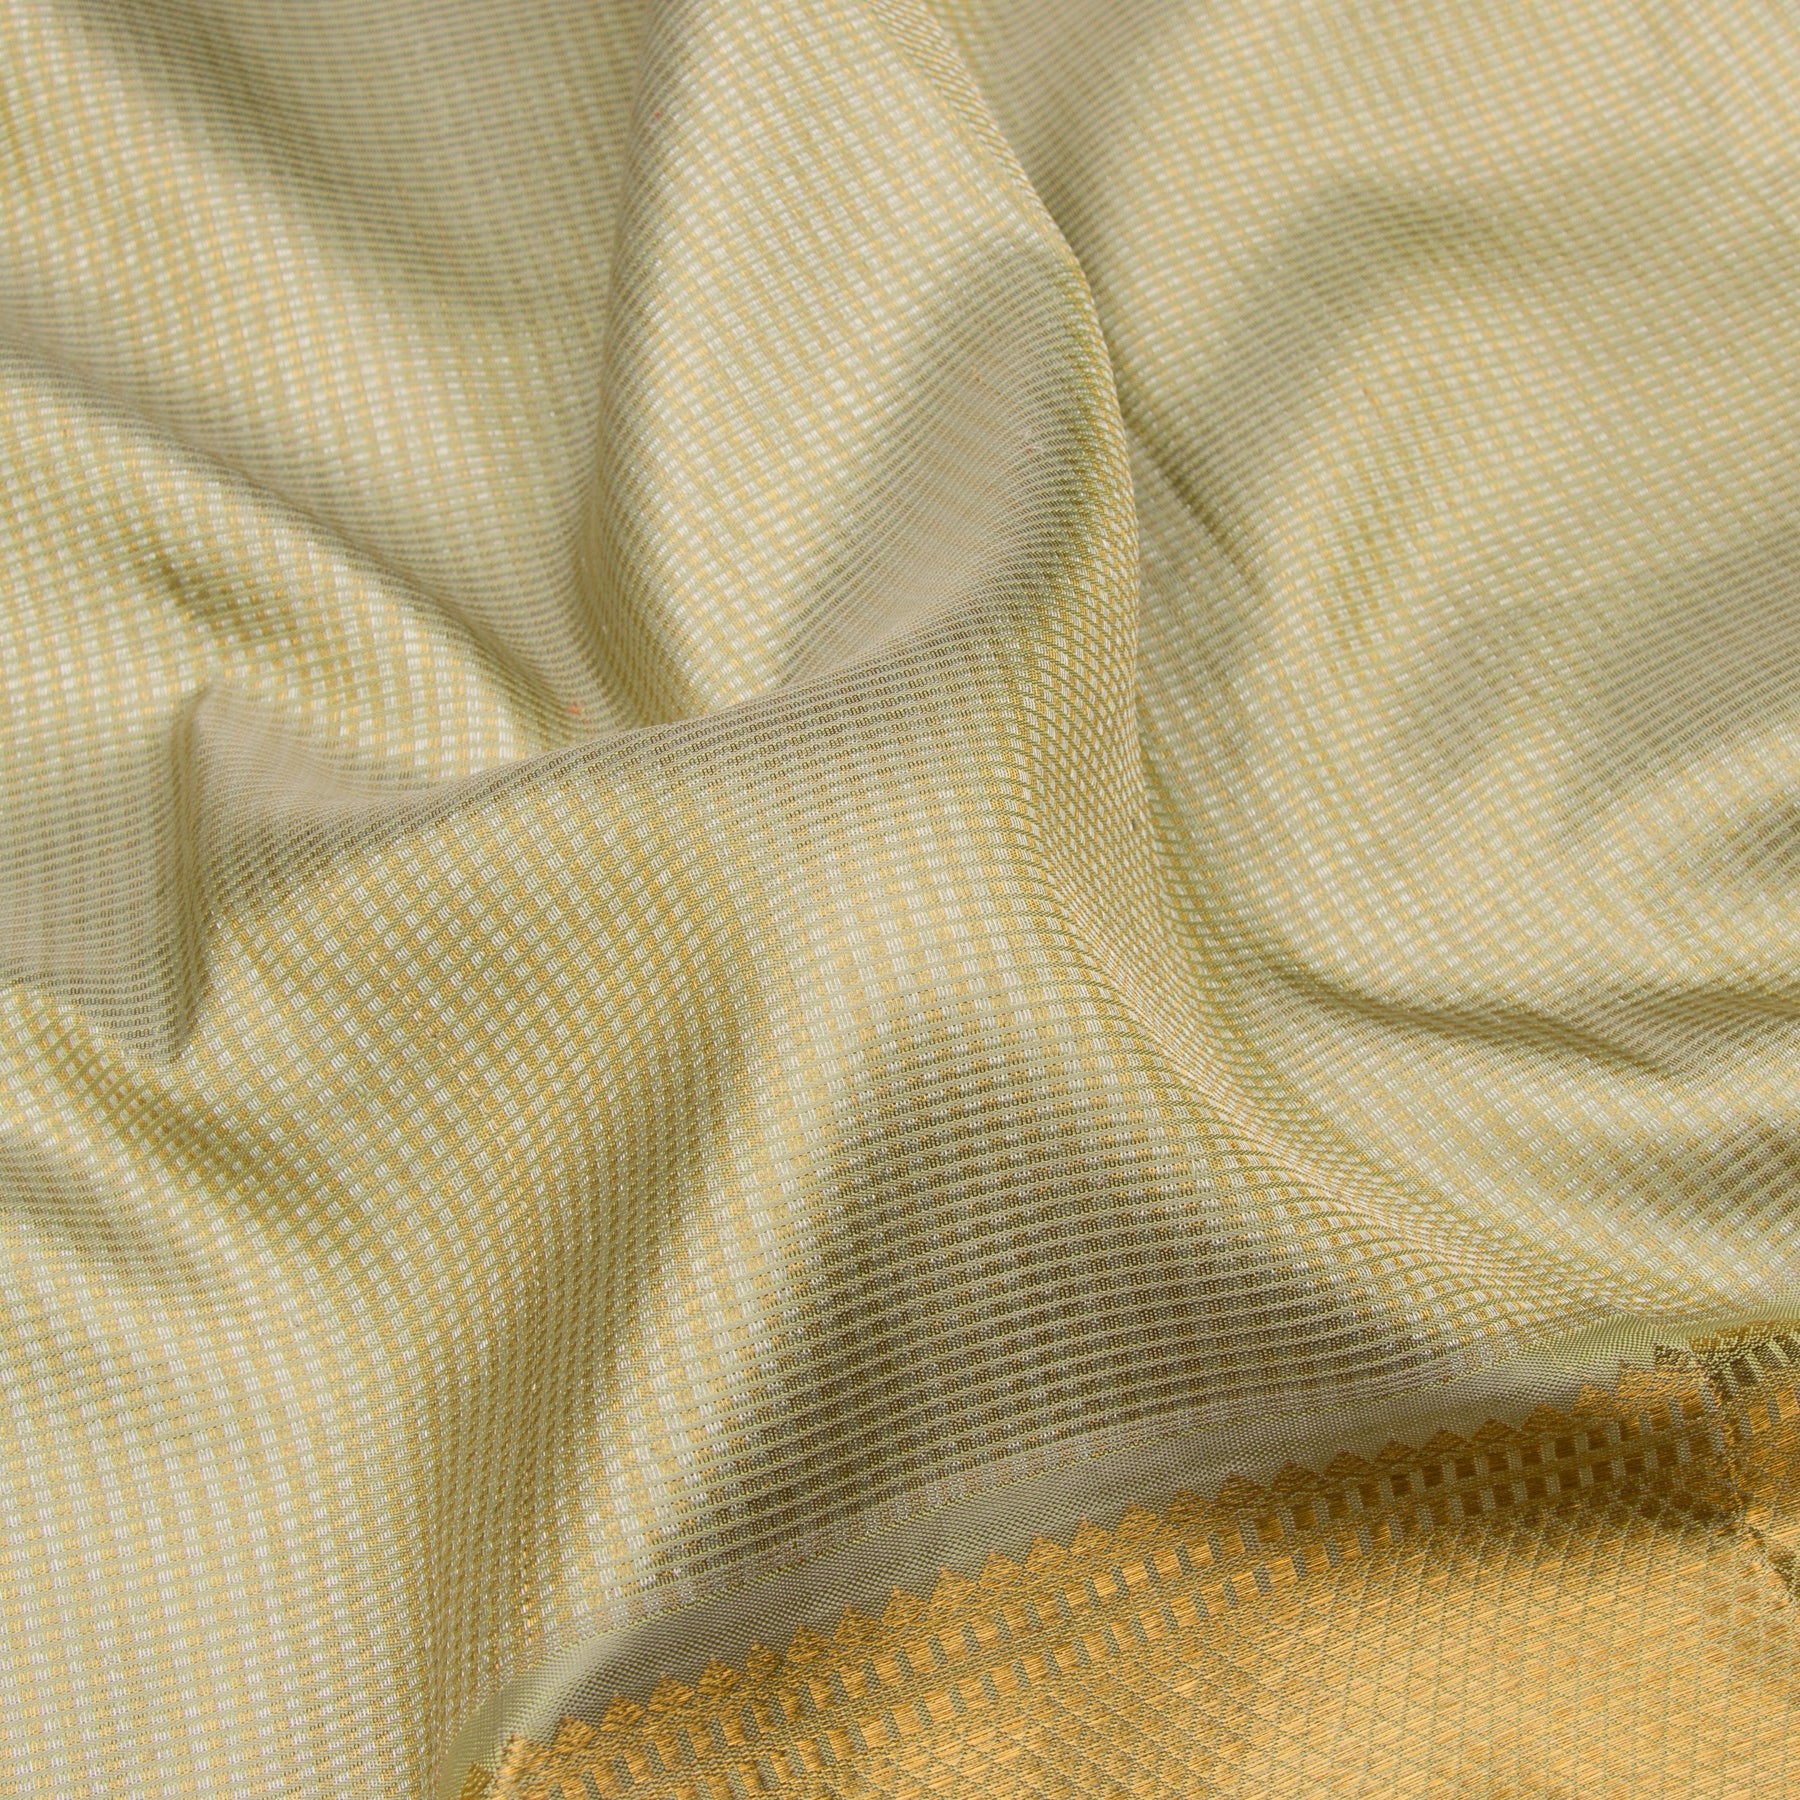 Kanakavalli Kanjivaram Silk Sari 22-110-HS001-12502 - Fabric View